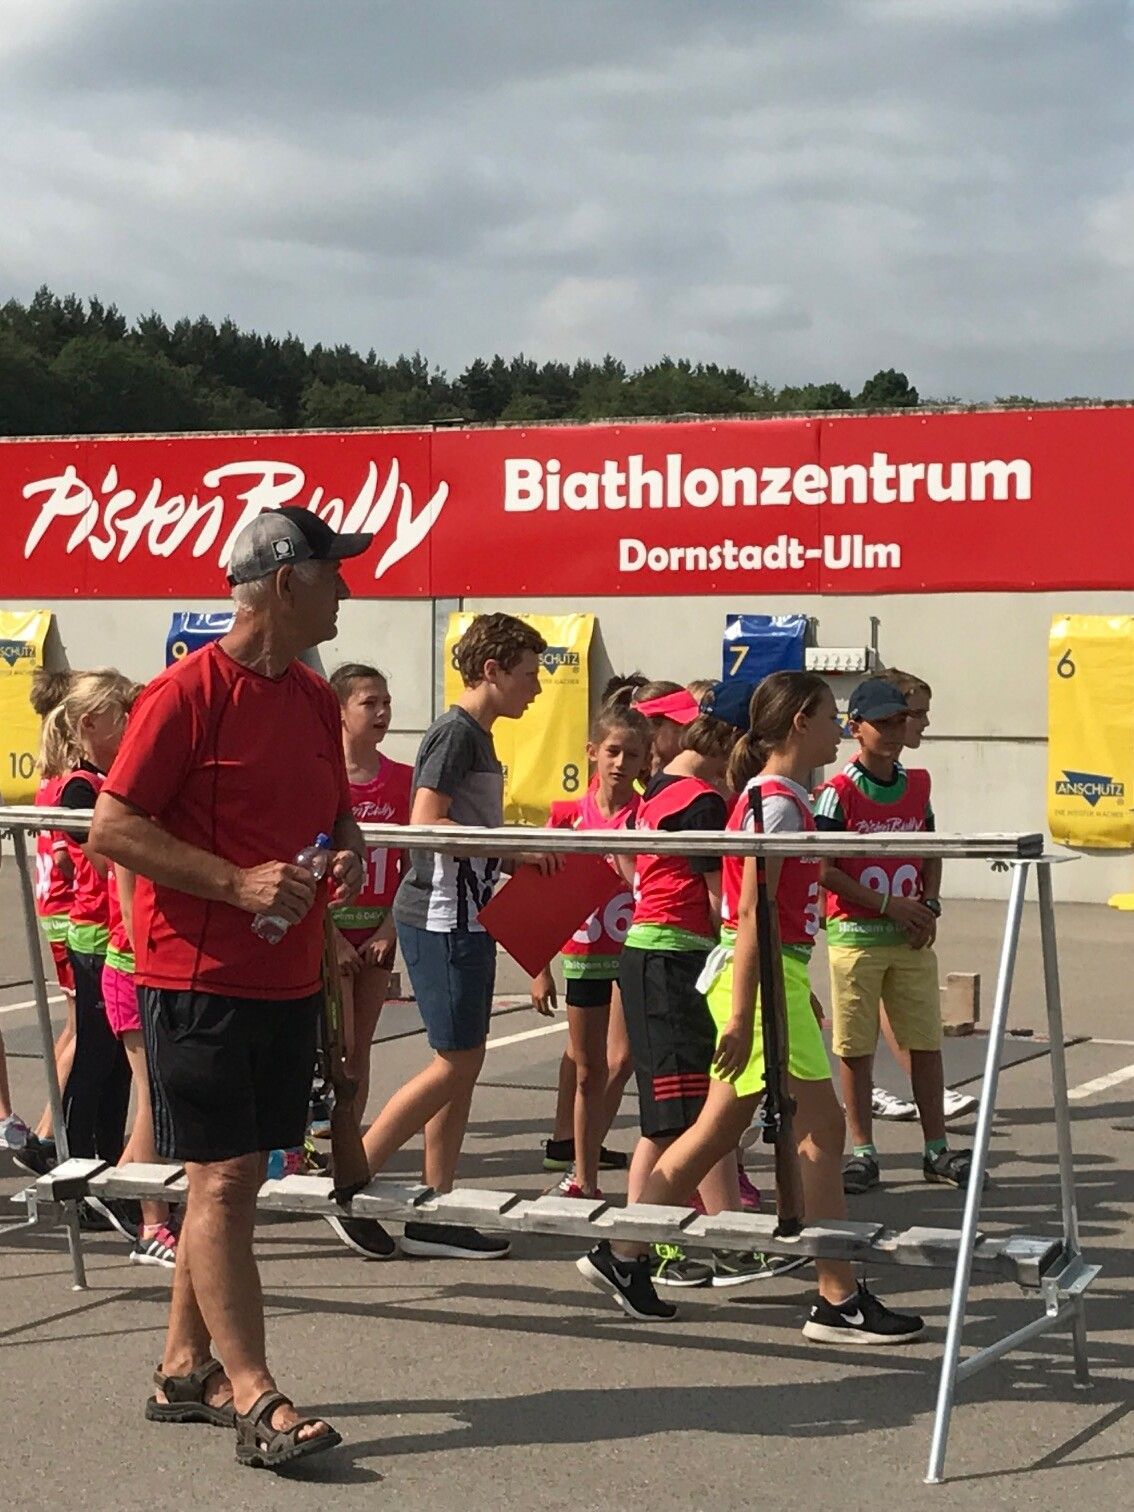 Sponsor de Centre de biathlon PistenBully